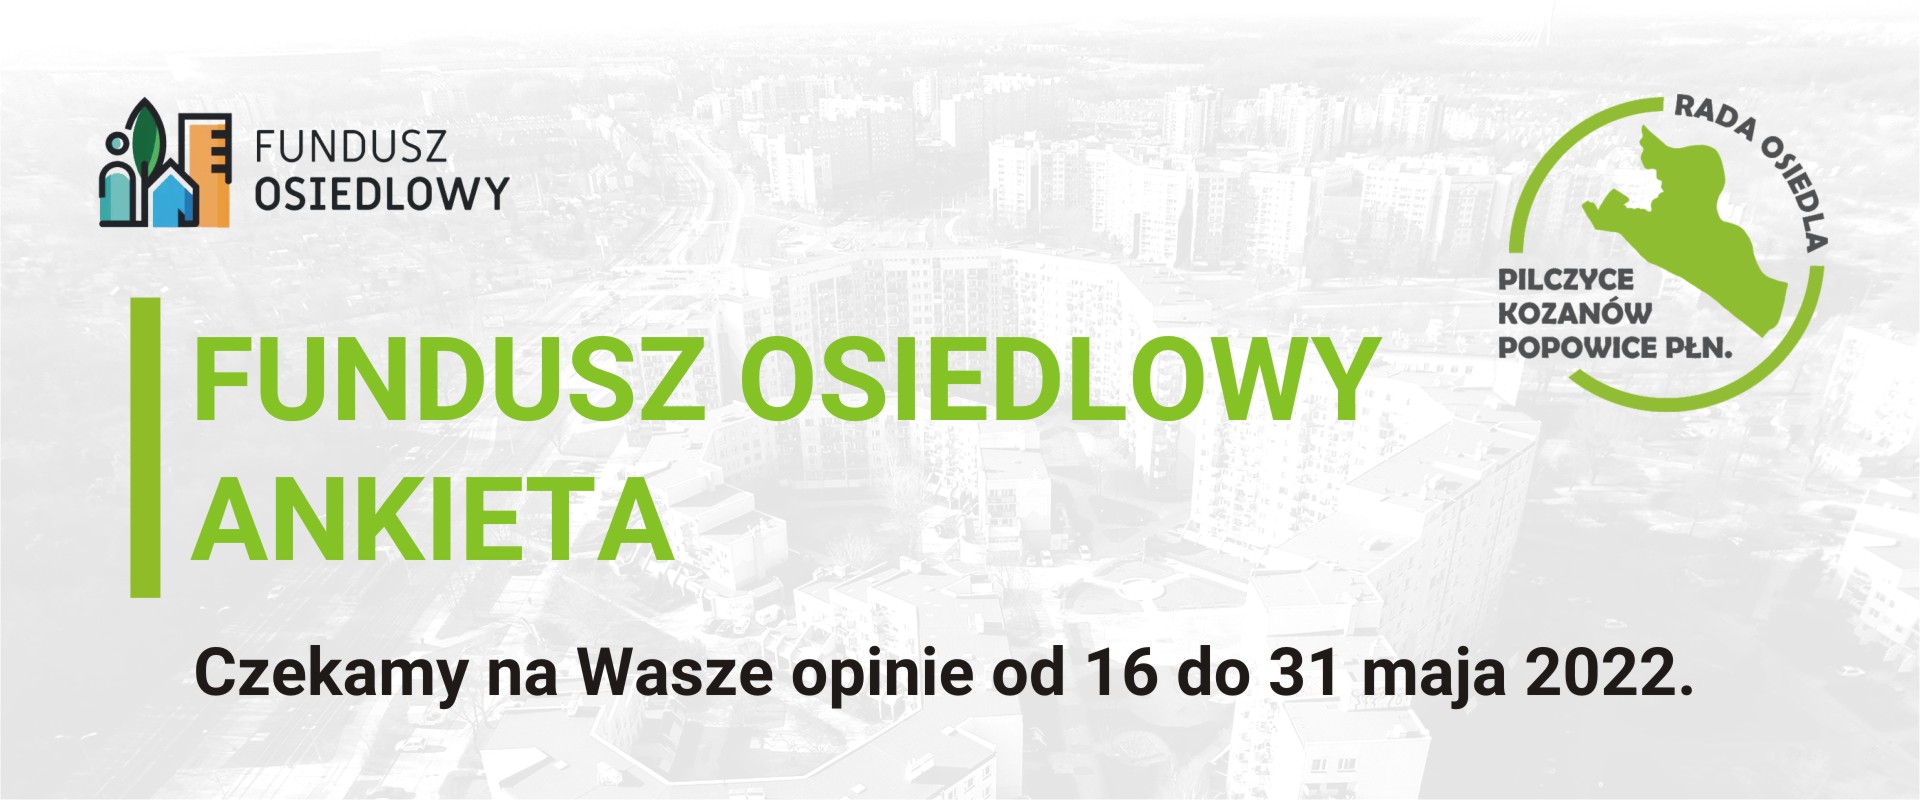 Ankieta do Funduszu Osiedlowego 2022-2023